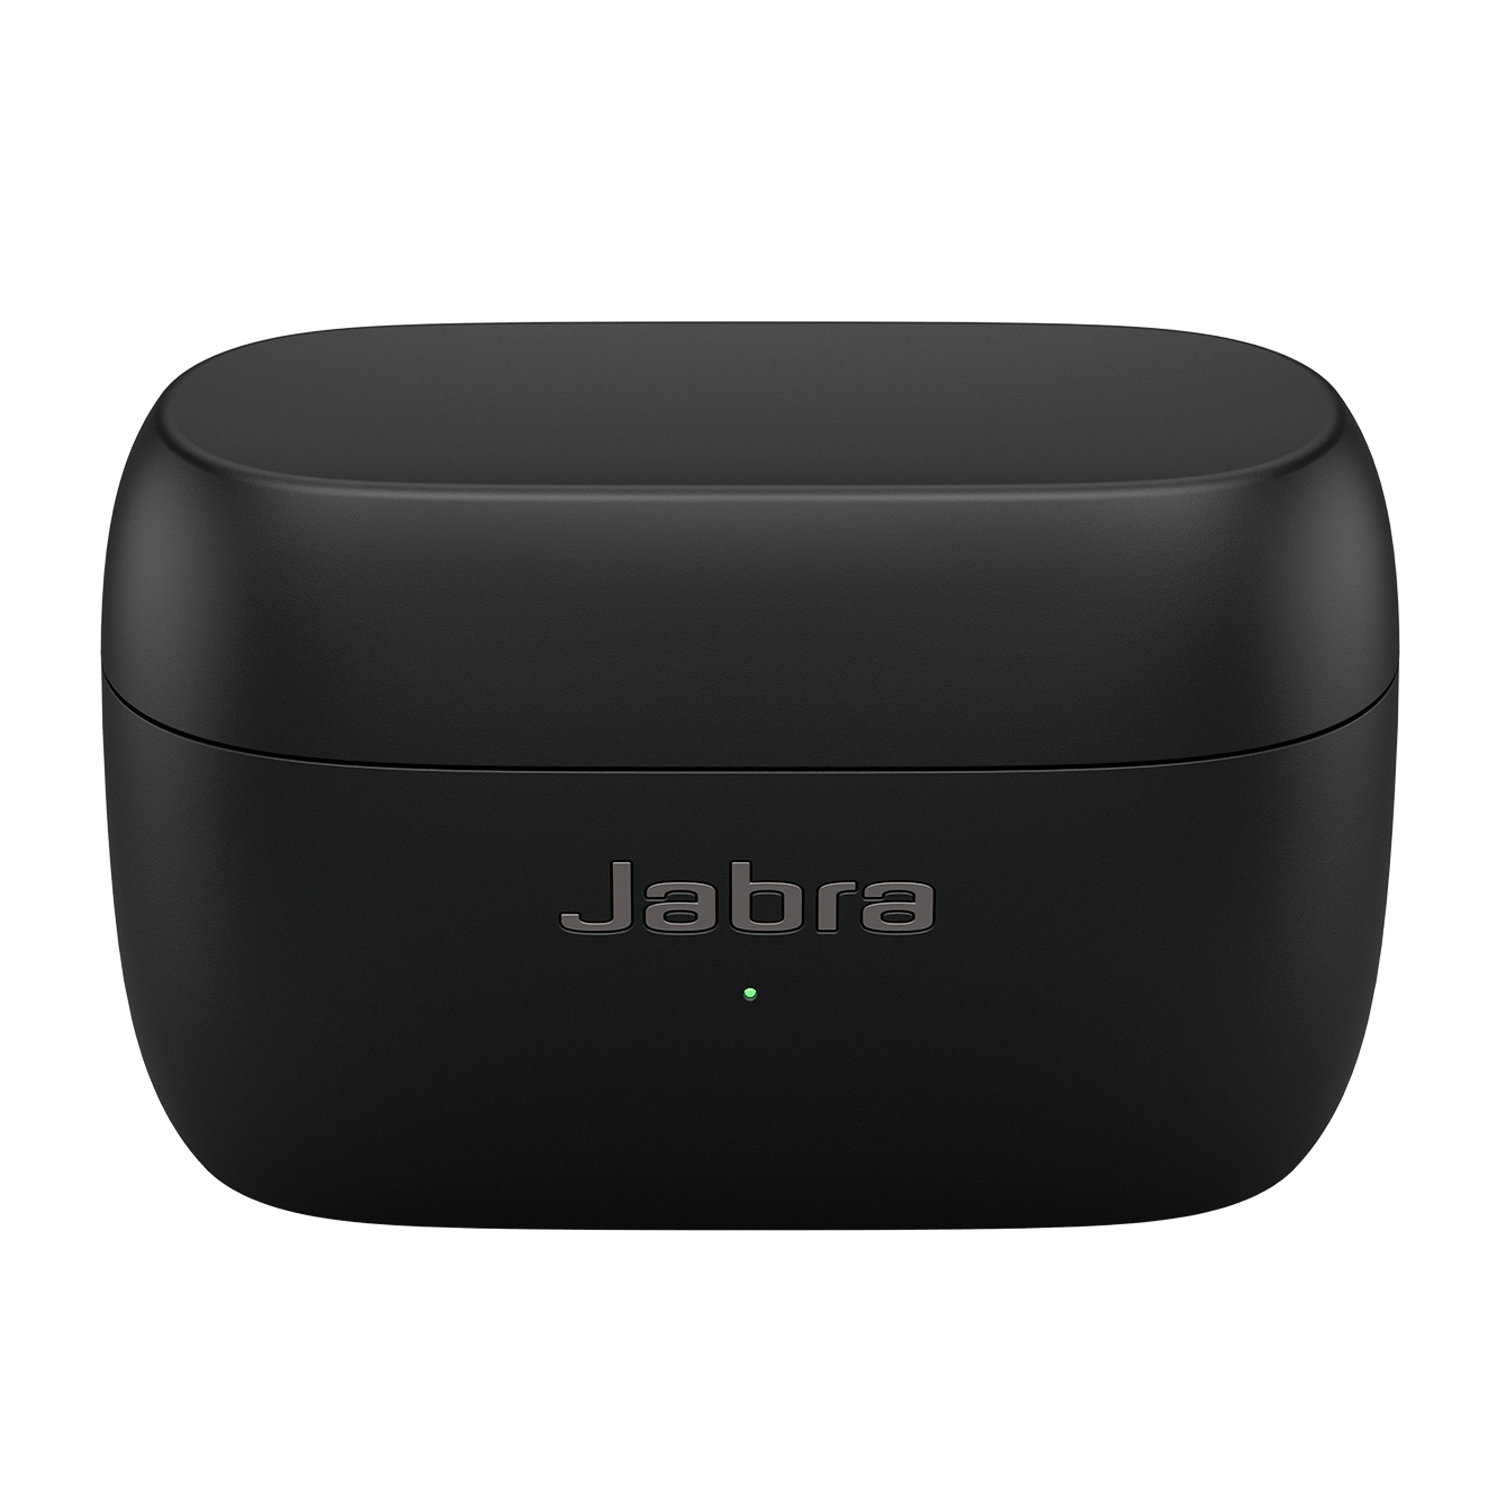 Jabra Elite 85t | Jabra サポート